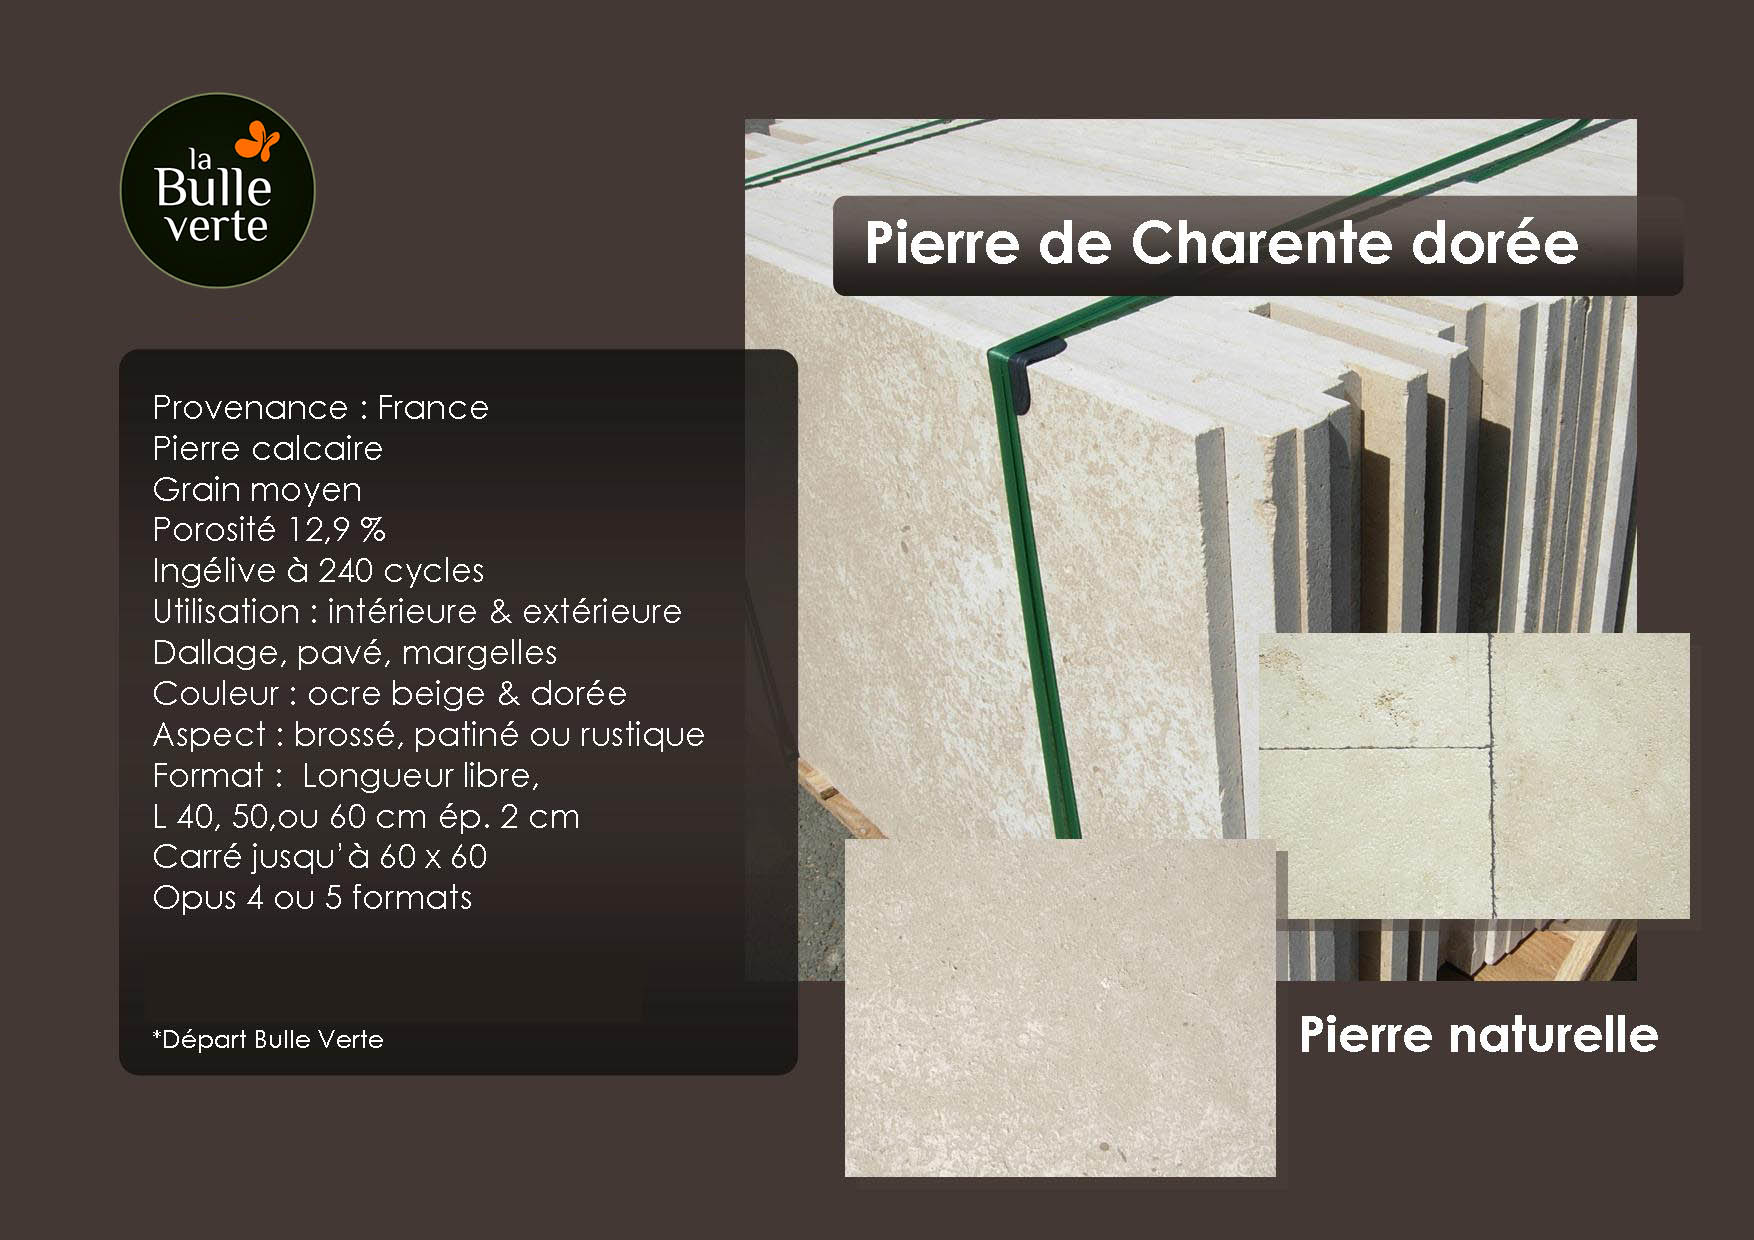 Pierre de Charente dorée - pierre naturelle - La Bulle Verte